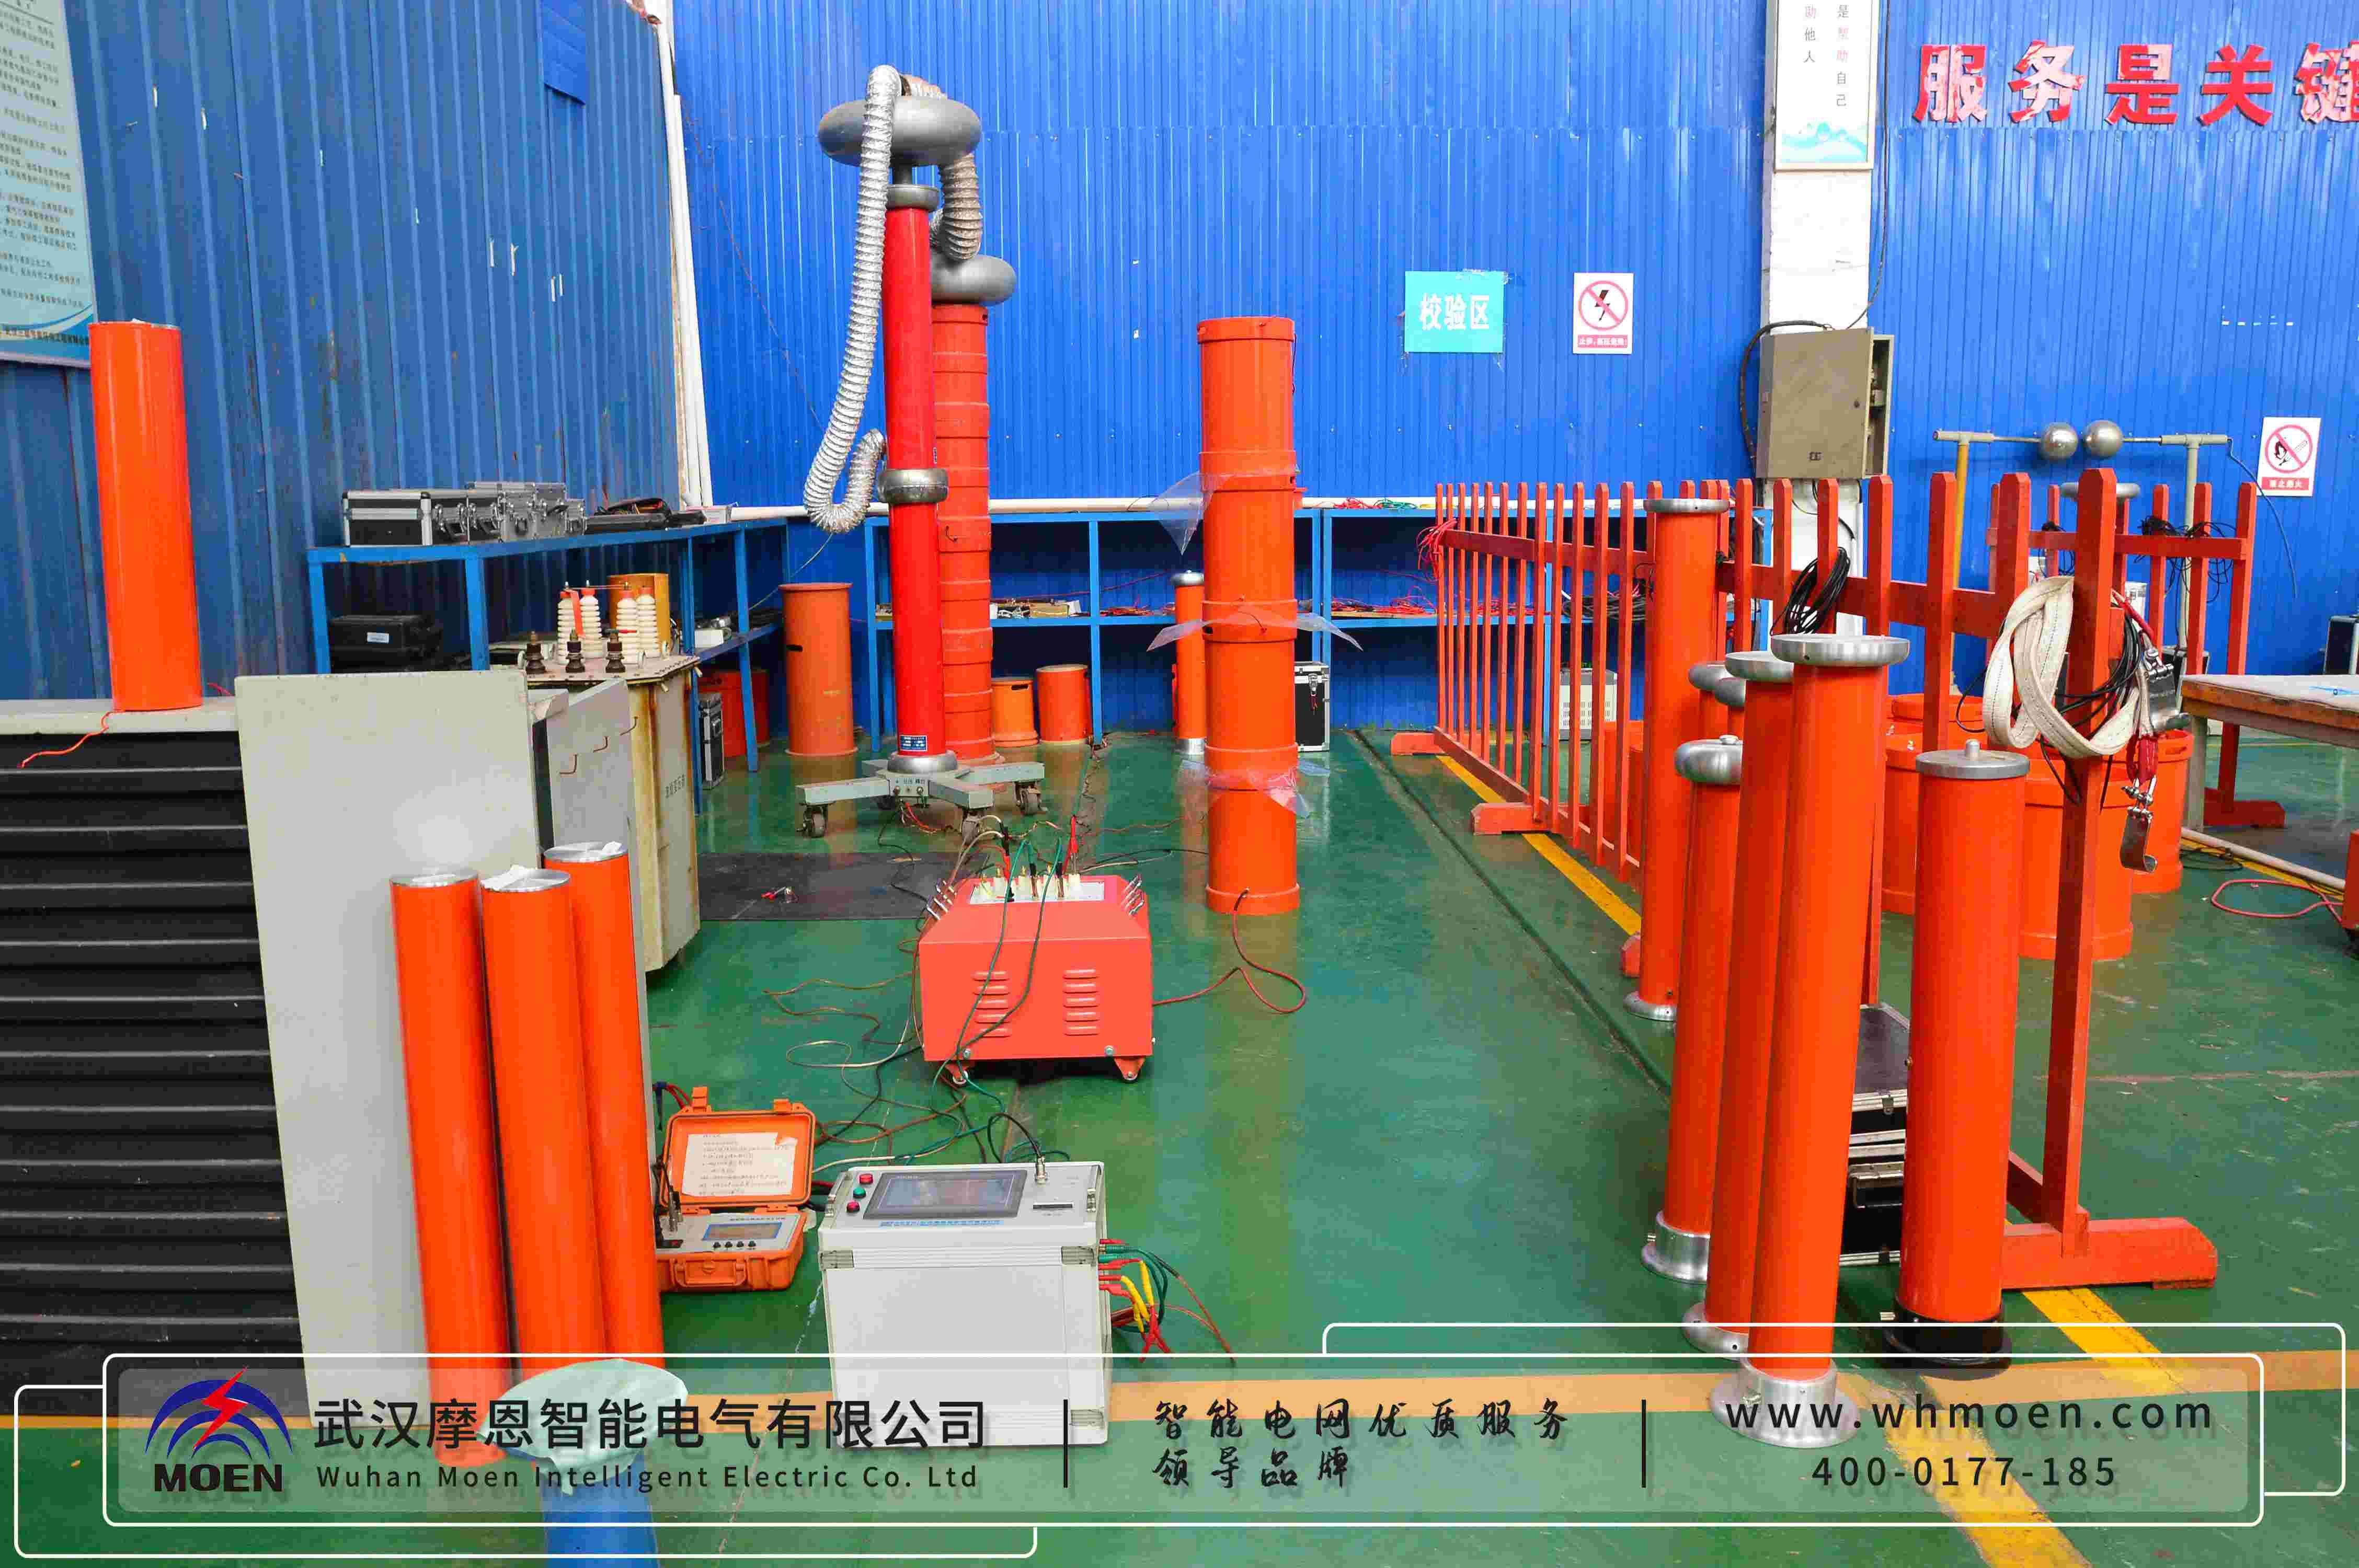 摩恩智能成功為江蘇電力工程公司供應專業檢測儀器2